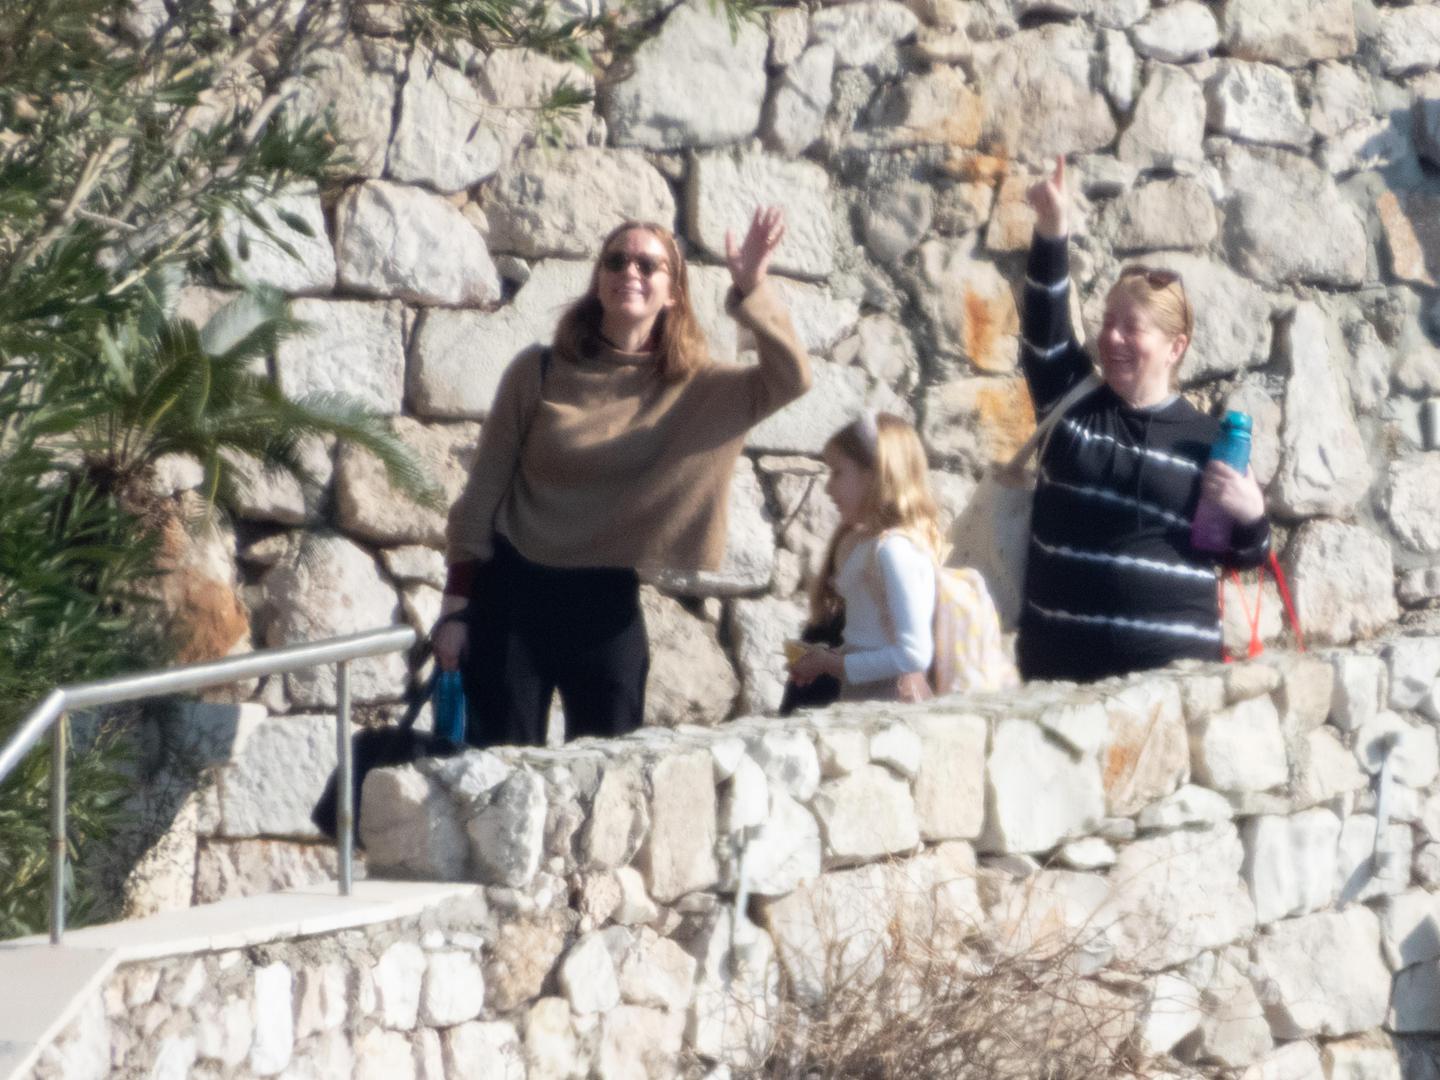 Glumica Emily Blunt s kćerima Hazel i Violet napustila je Dubrovnik u koji je došla u posjet suprugu Johnu Krasinskom. On je već nekoliko dana u Dubrovniku gdje s ostatkom glumačke ekipe snima nove nastavke serije Jack Ryan